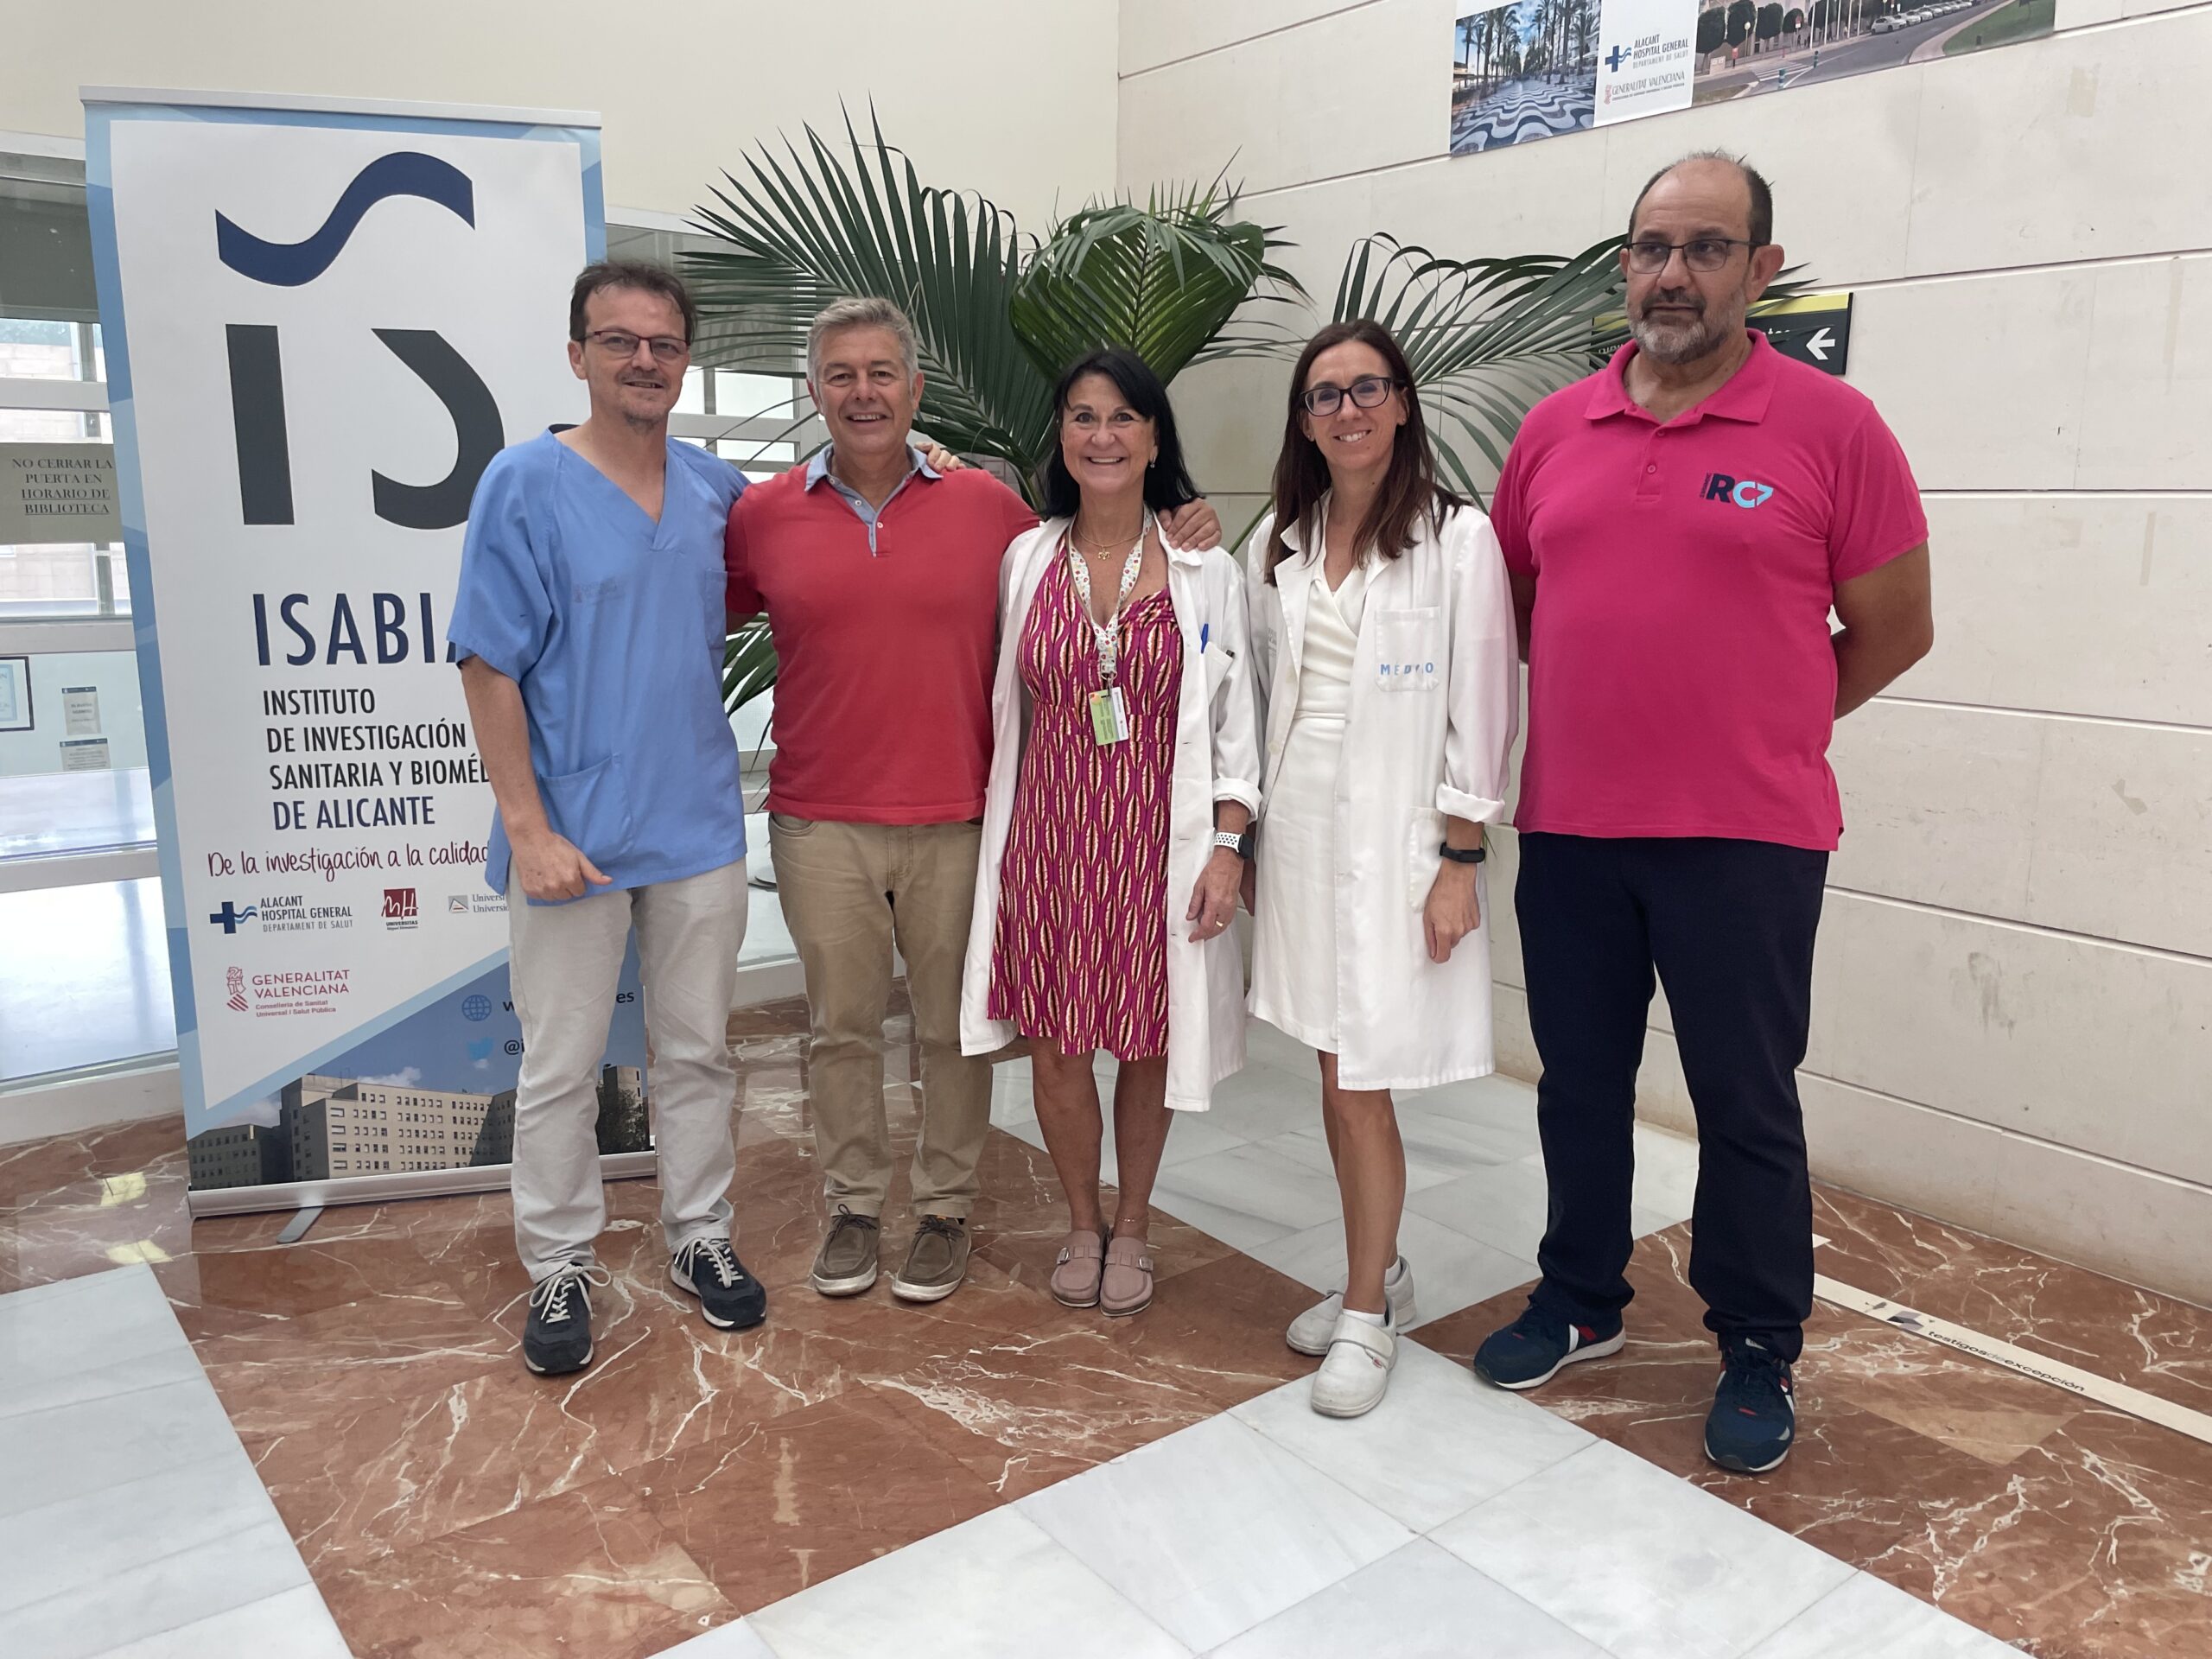 El nadador Jorge Crivillés unirá a nado Tabarca y Benidorm en favor de la investigación contra la leucemia pediátrica que desarrolla ISABIAL